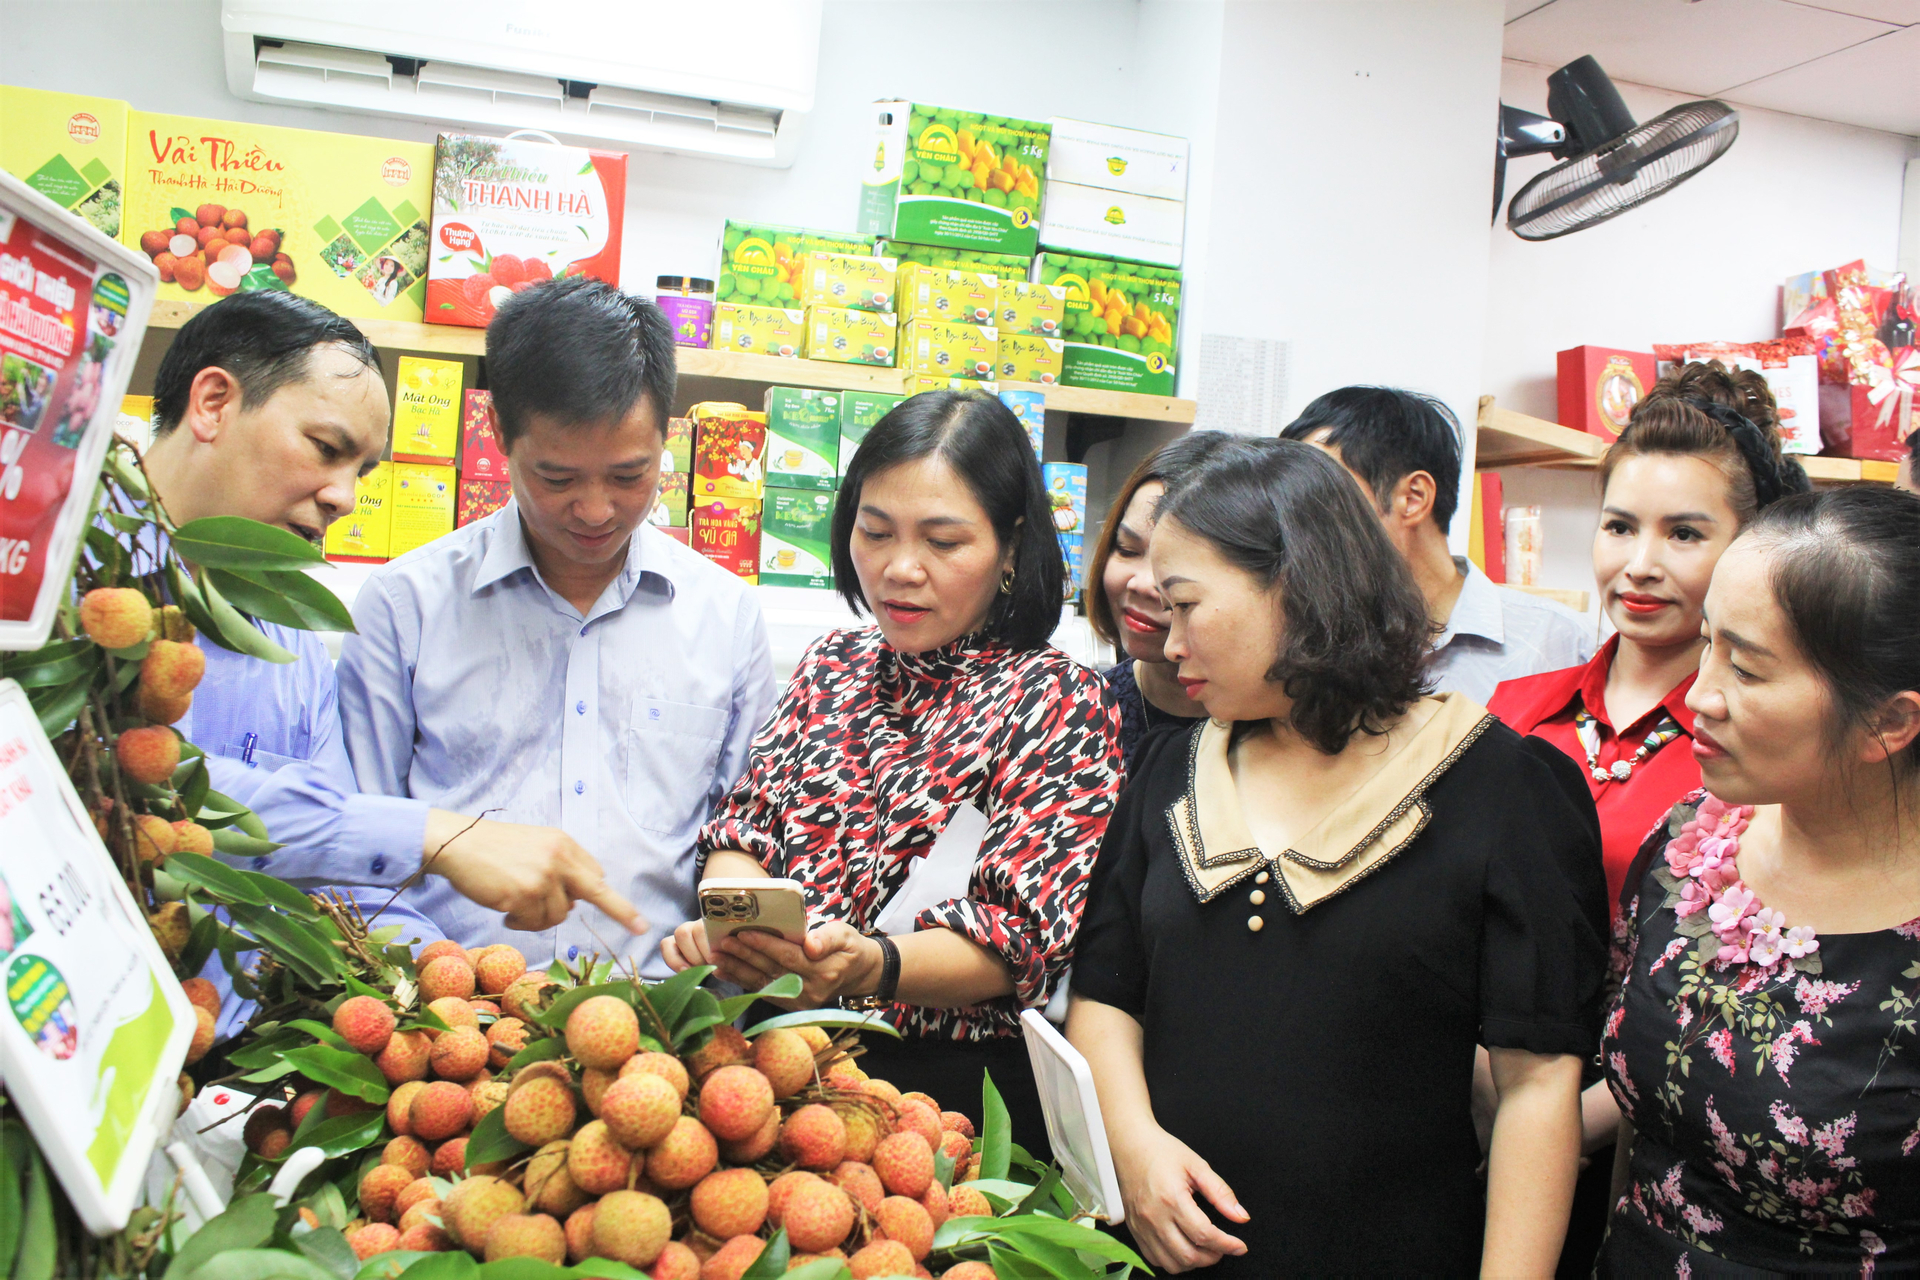 Vải thiều Thanh Hà sẽ được bày bán tại tất cả các cửa hàng của Công ty Thực phẩm sạch Biggreen Việt Nam trên địa bàn Hà Nội. Ảnh: Trung Quân.